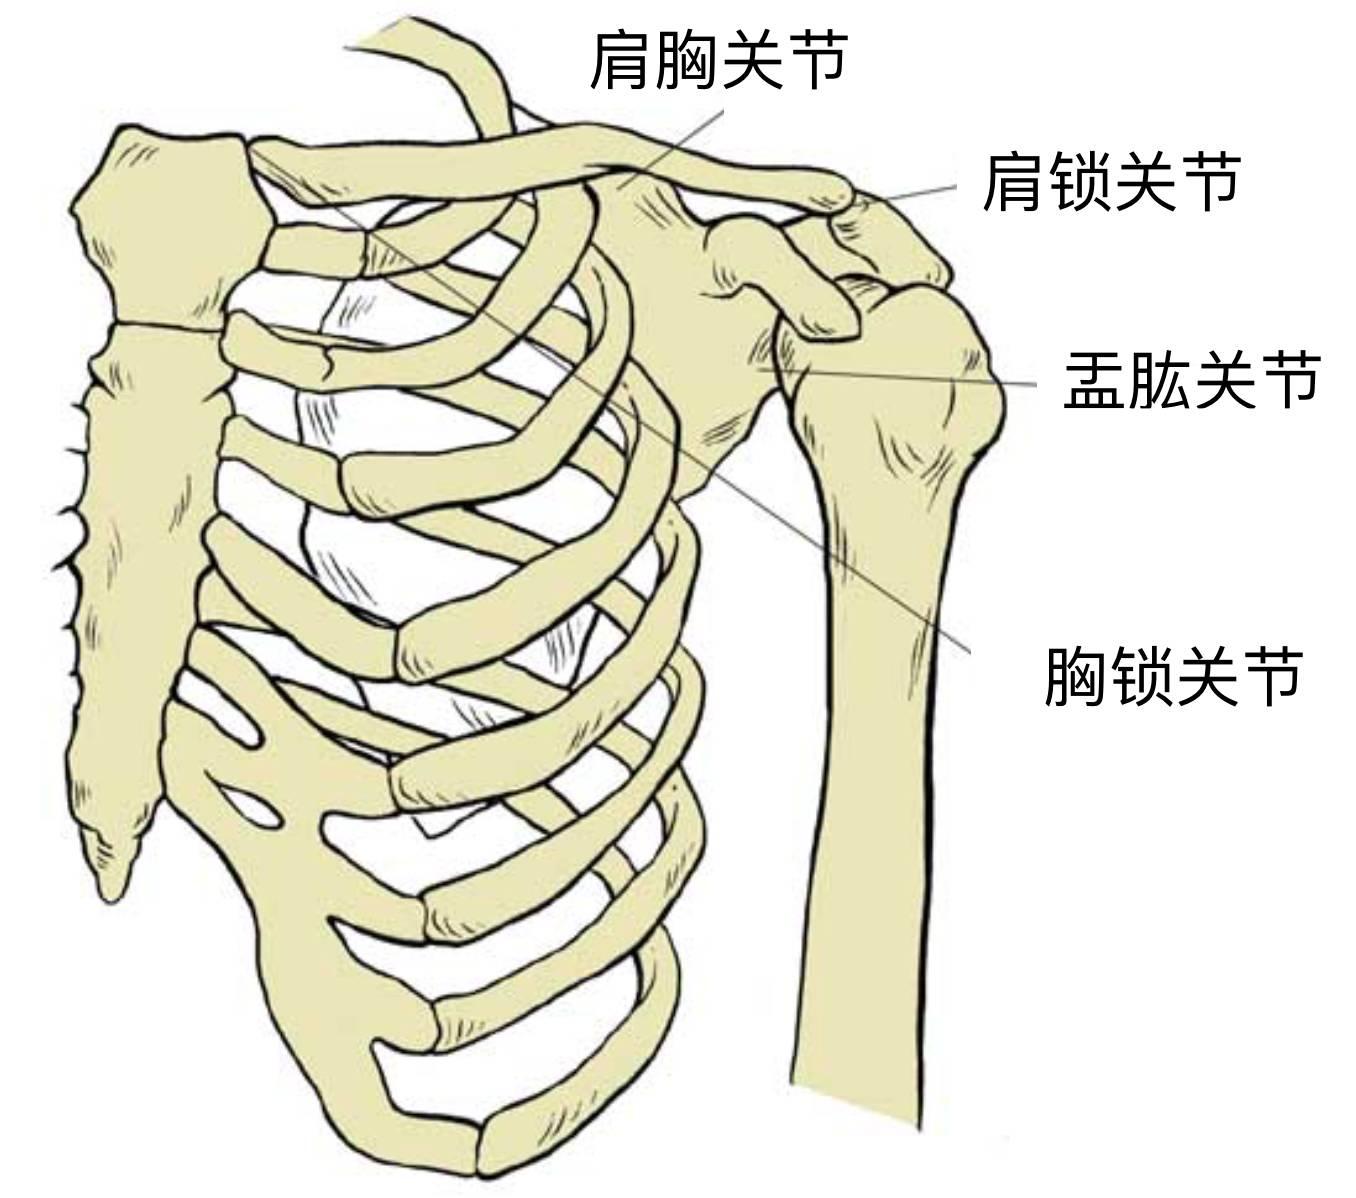 ▼肩关节共由四个关节组成:孟肱关节,肩锁关节,肩胸关节,胸锁关节▼